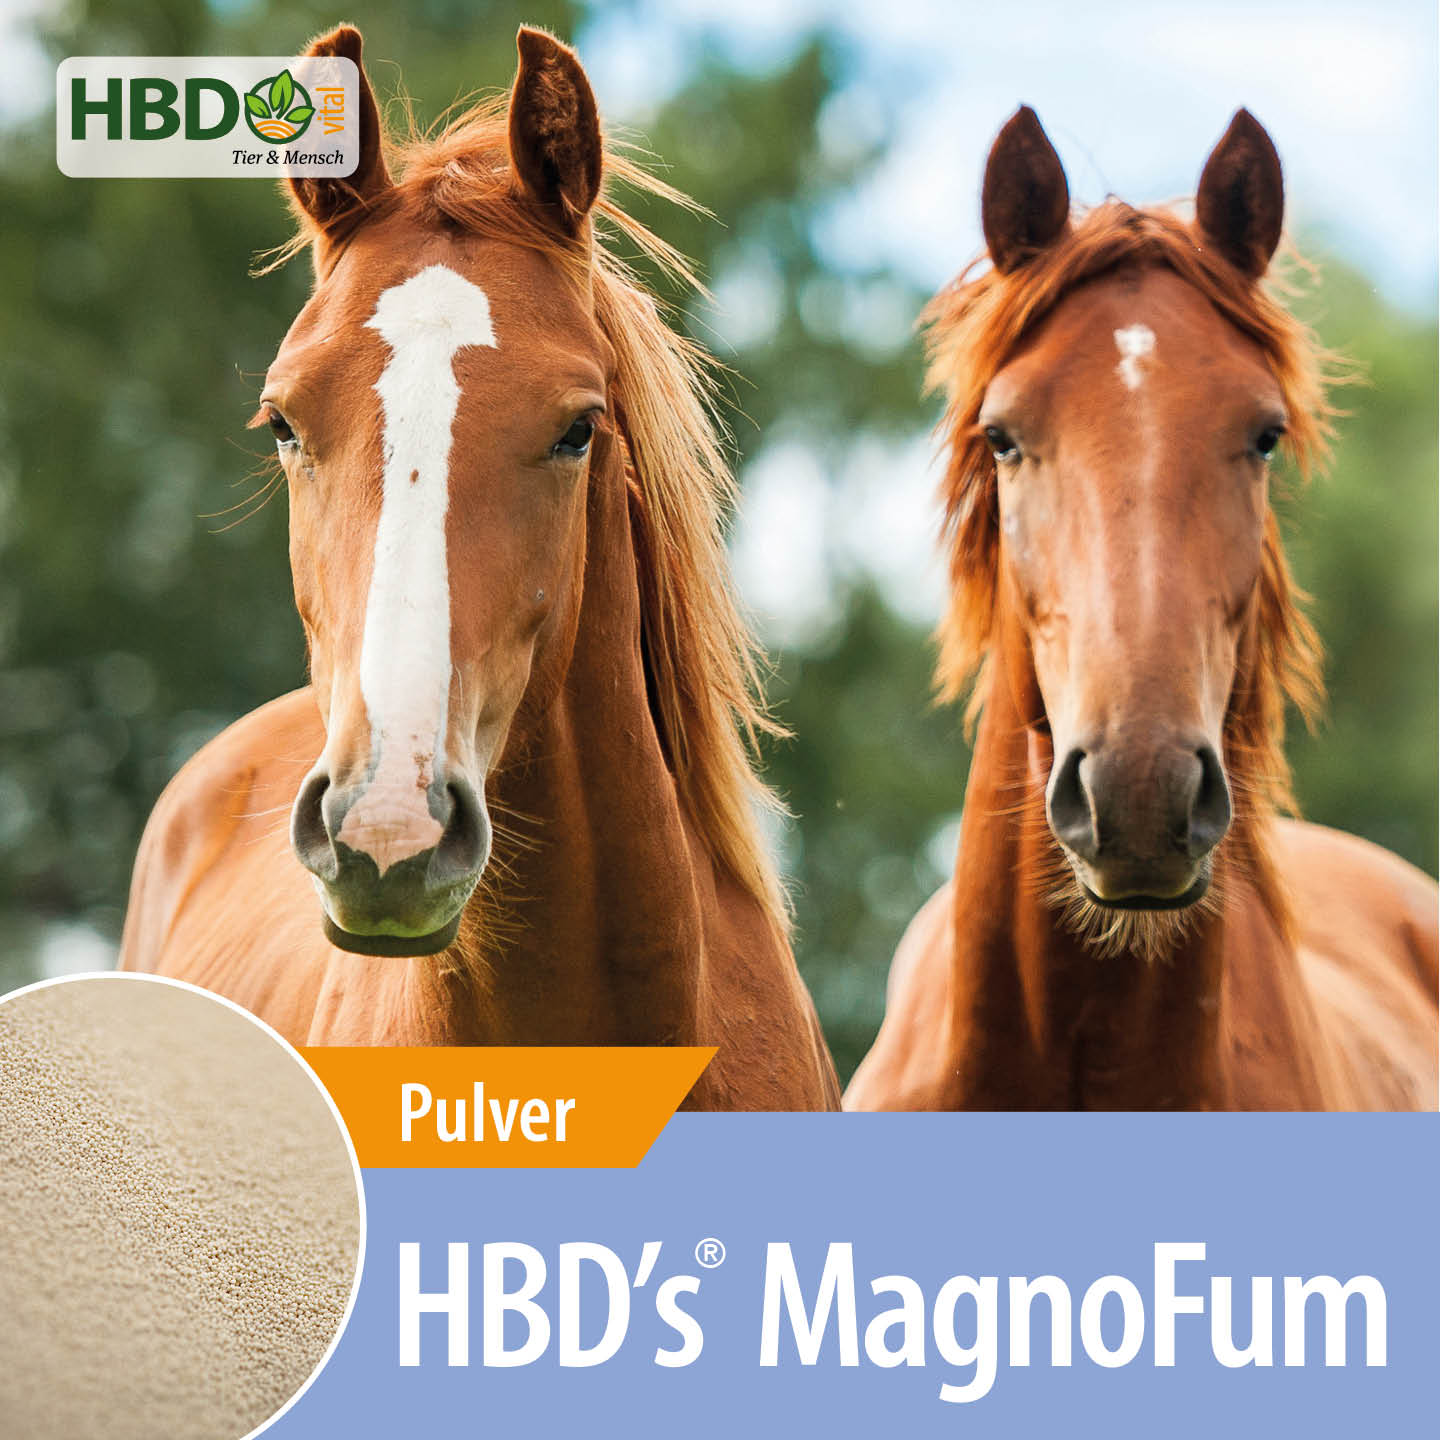 Shopbild für HBD’s MagnoFum dem hochbioverfügbarem Magnesiumpräparat - Das Bild zeigt den Produktnamen sowie den Hinweis, dass es sich um ein Pulver handelt. Zwei braune Pferde sind zu sehen, was das Produkt visuell ansprechend präsentiert und seine Verwe